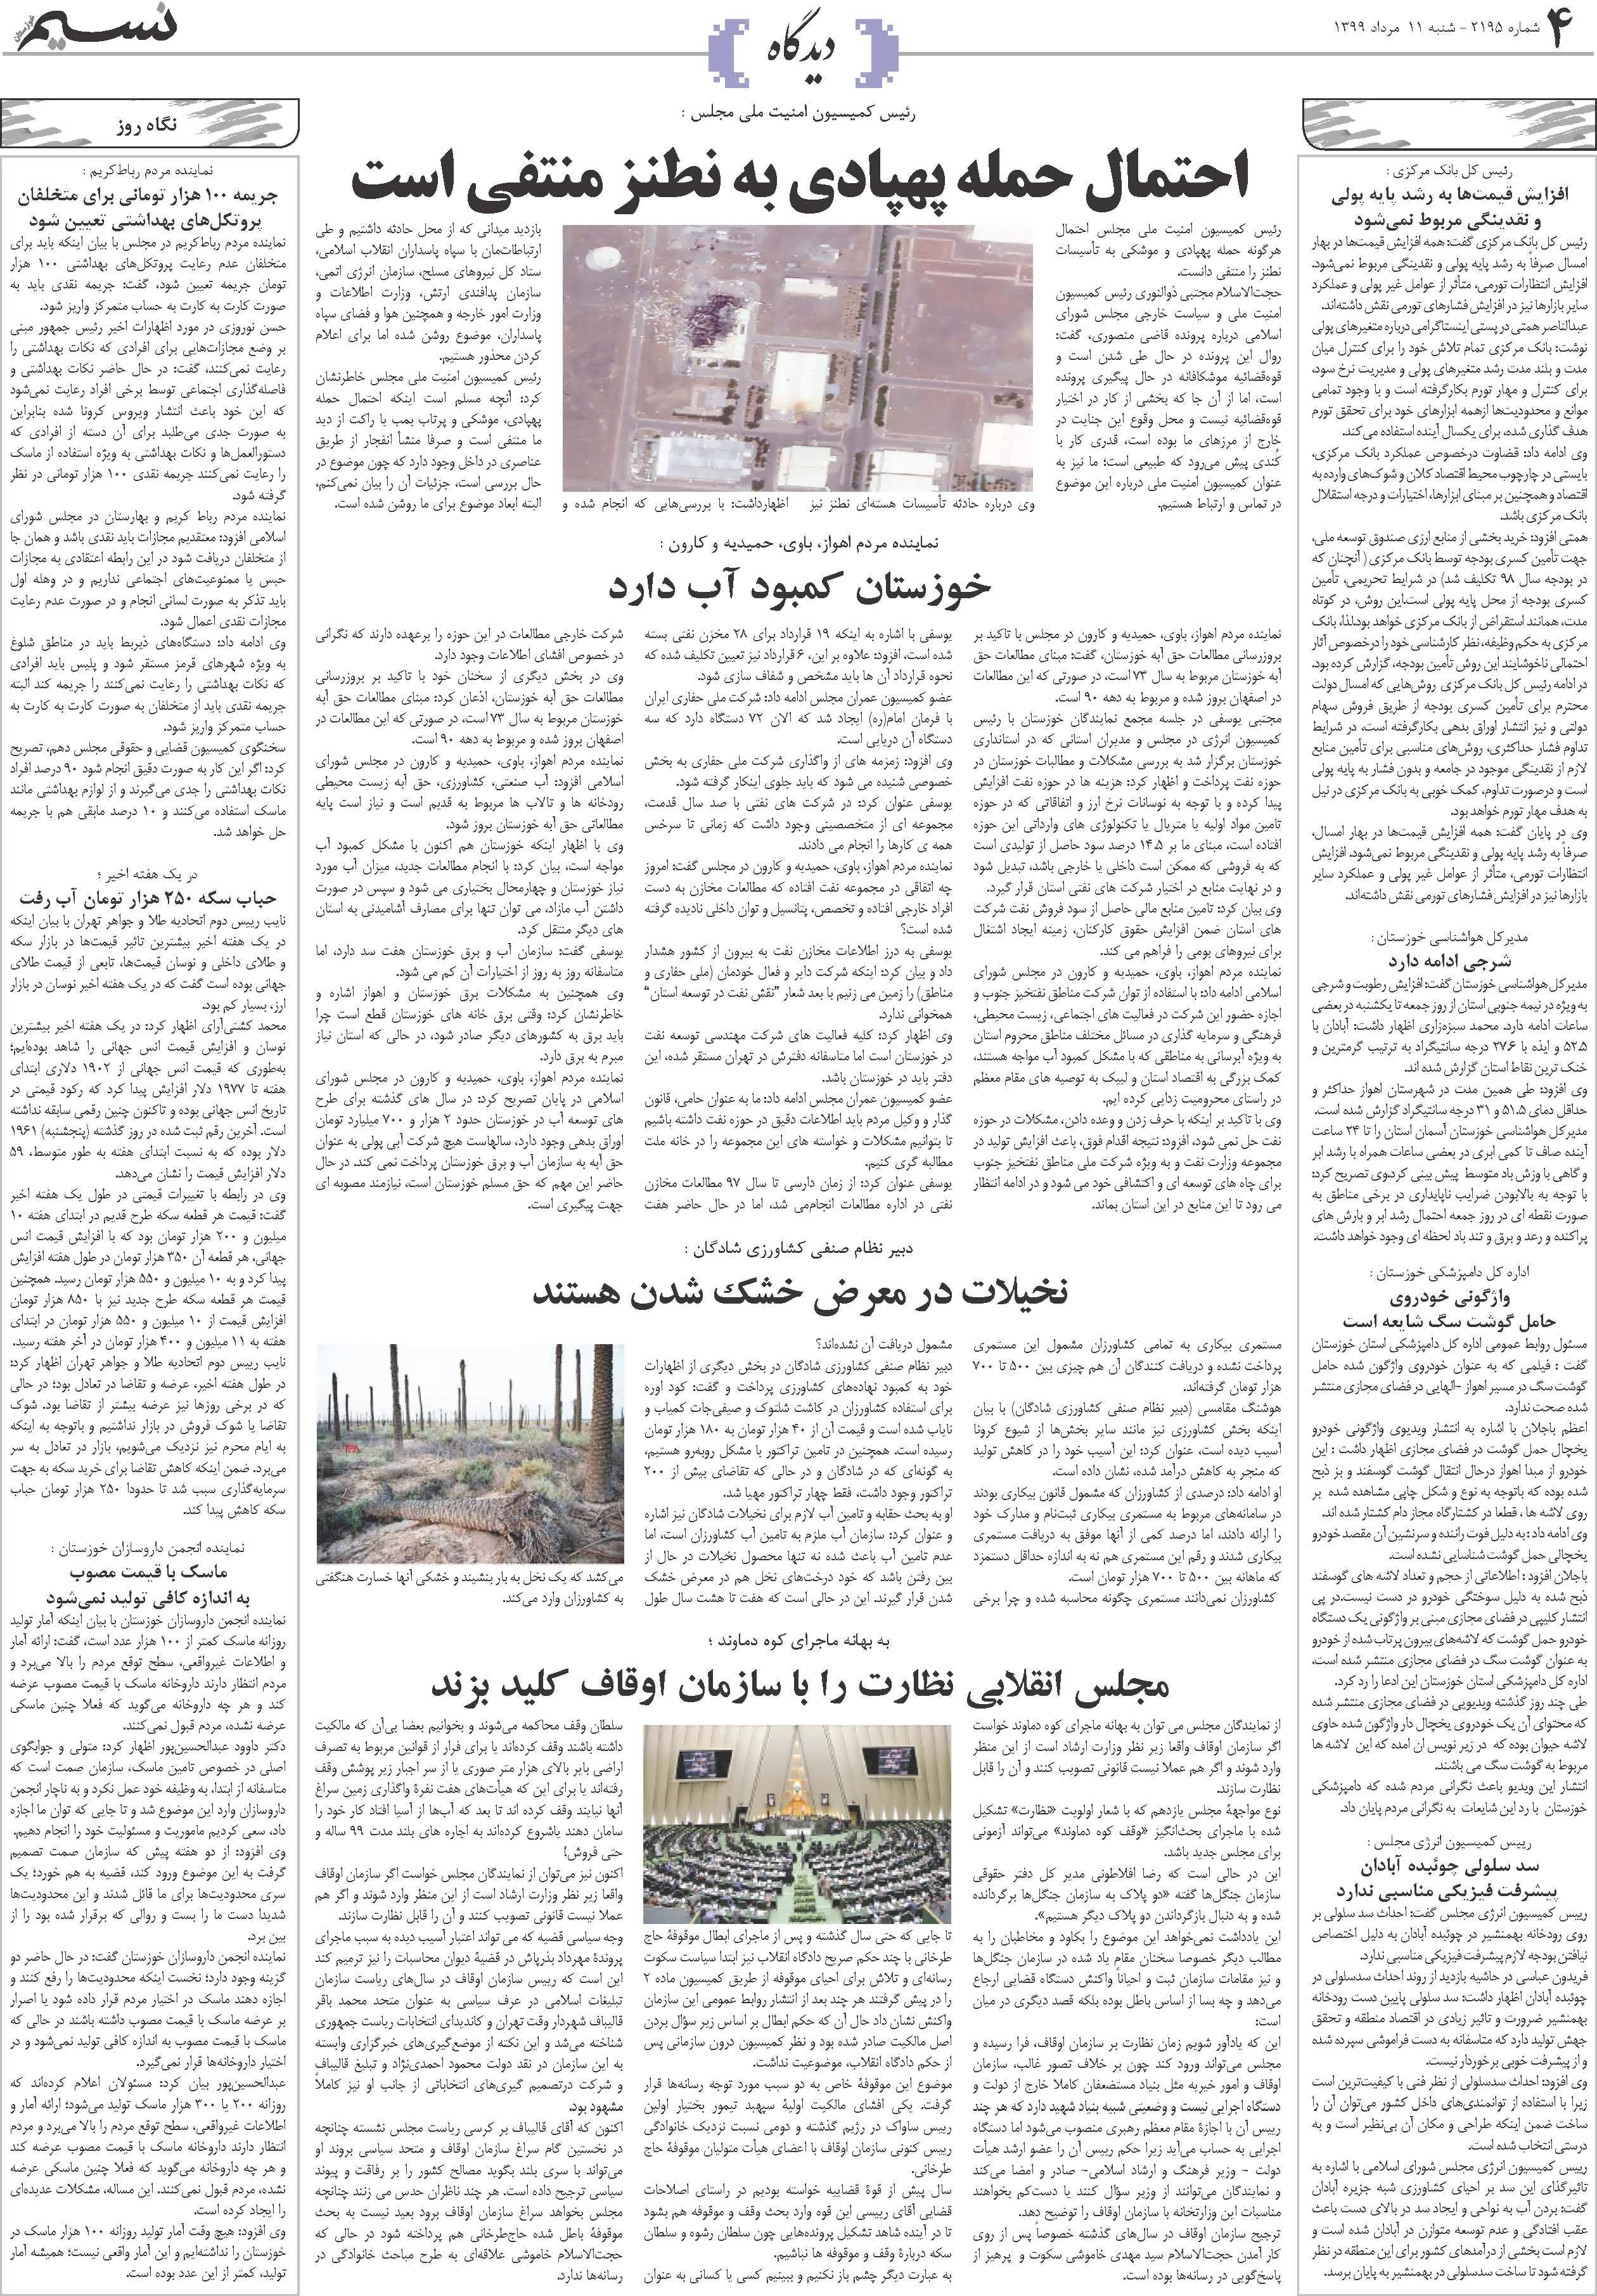 صفحه دیدگاه روزنامه نسیم شماره 2195